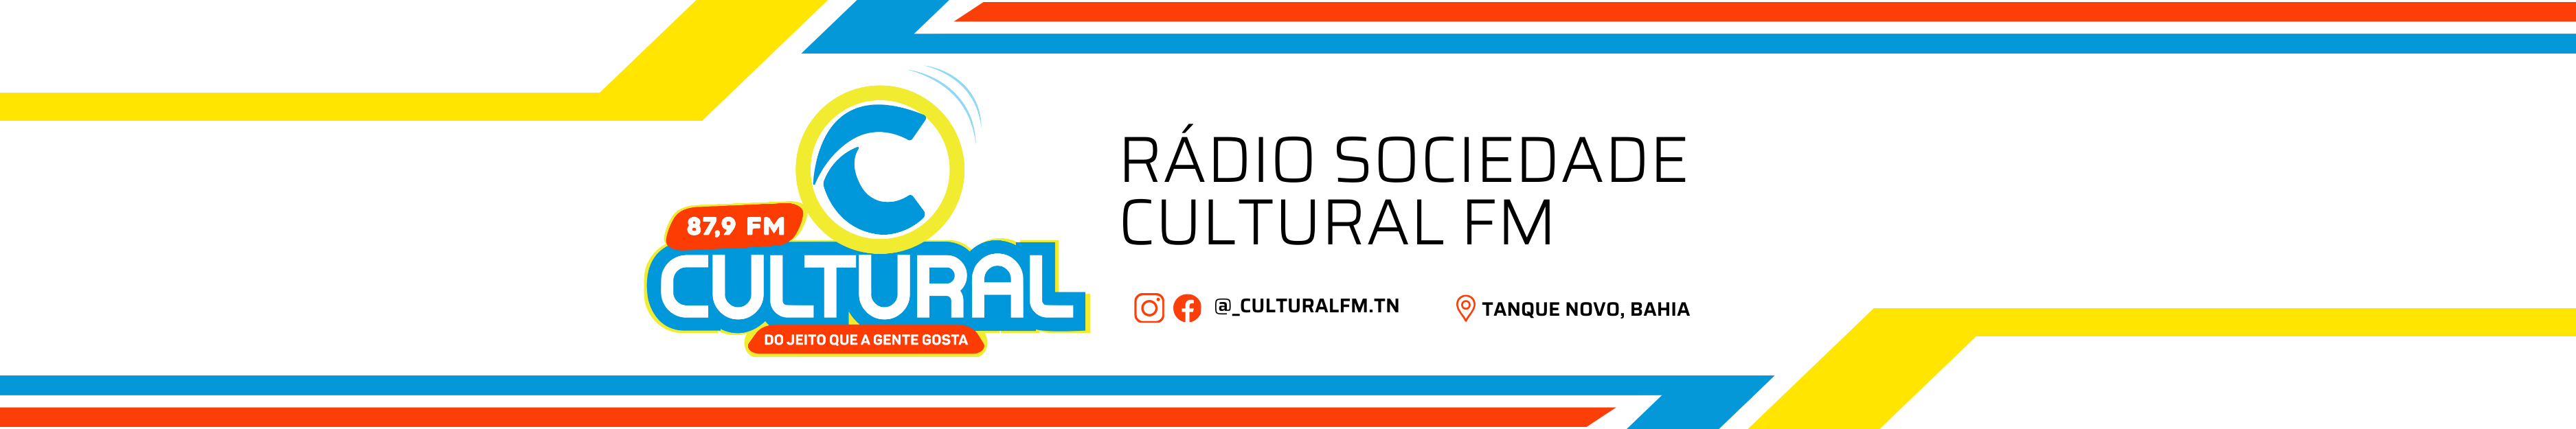 Cultural FM 87,9